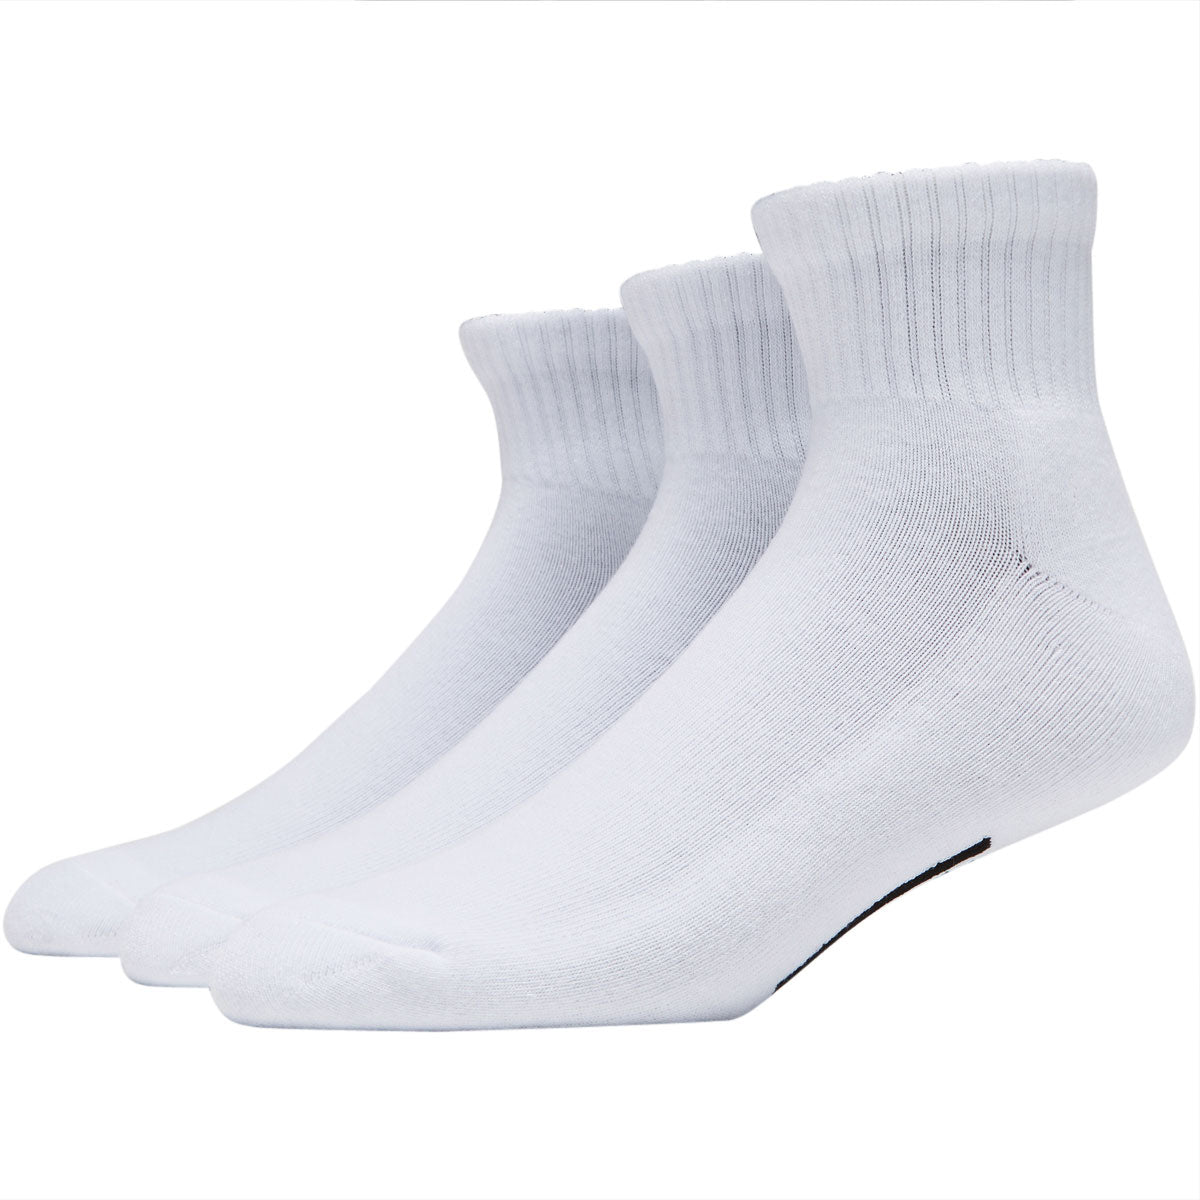 Vans Classic Ankle Socks - White image 1